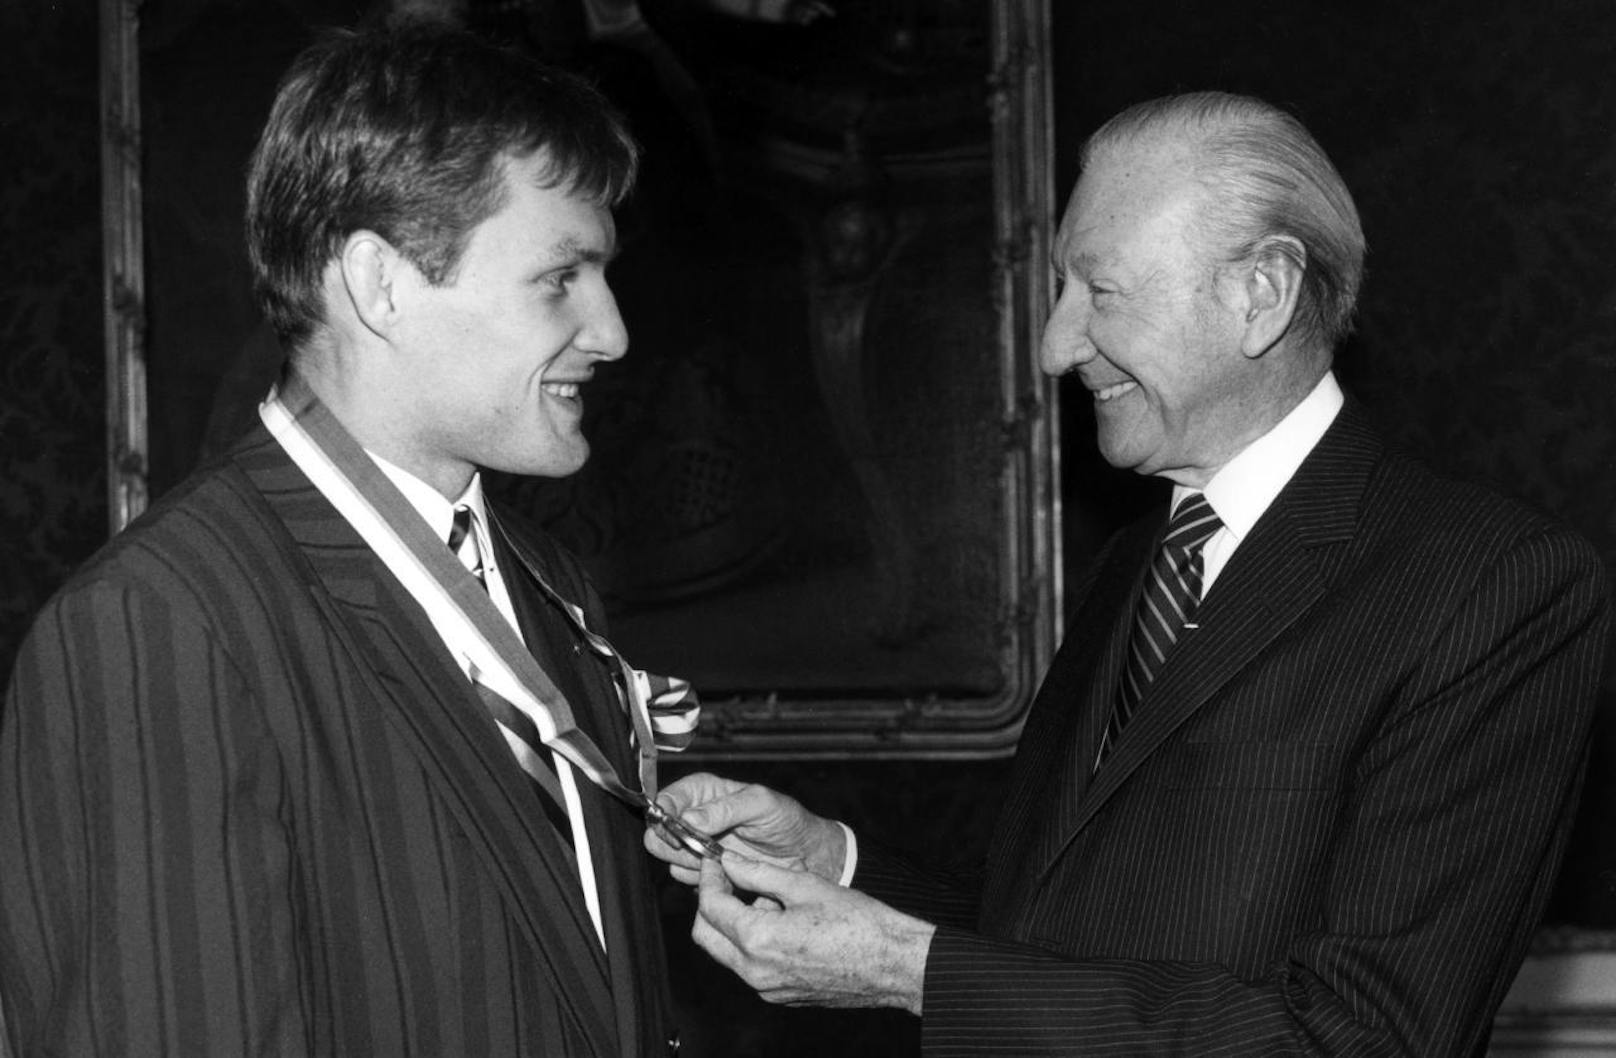 Bundespräsident Kurt Waldheim gratuliert ihm zu seiner zweiten Olympia-Goldenen. Es ist der Höhepunkt seiner Laufbahn.

Die stolze Bilanz: 2x Gold bei Olympia. 1x WM-Gold. 1x EM-Gold, 3x Silber, 4x Bronze bei Europameisterschaften.